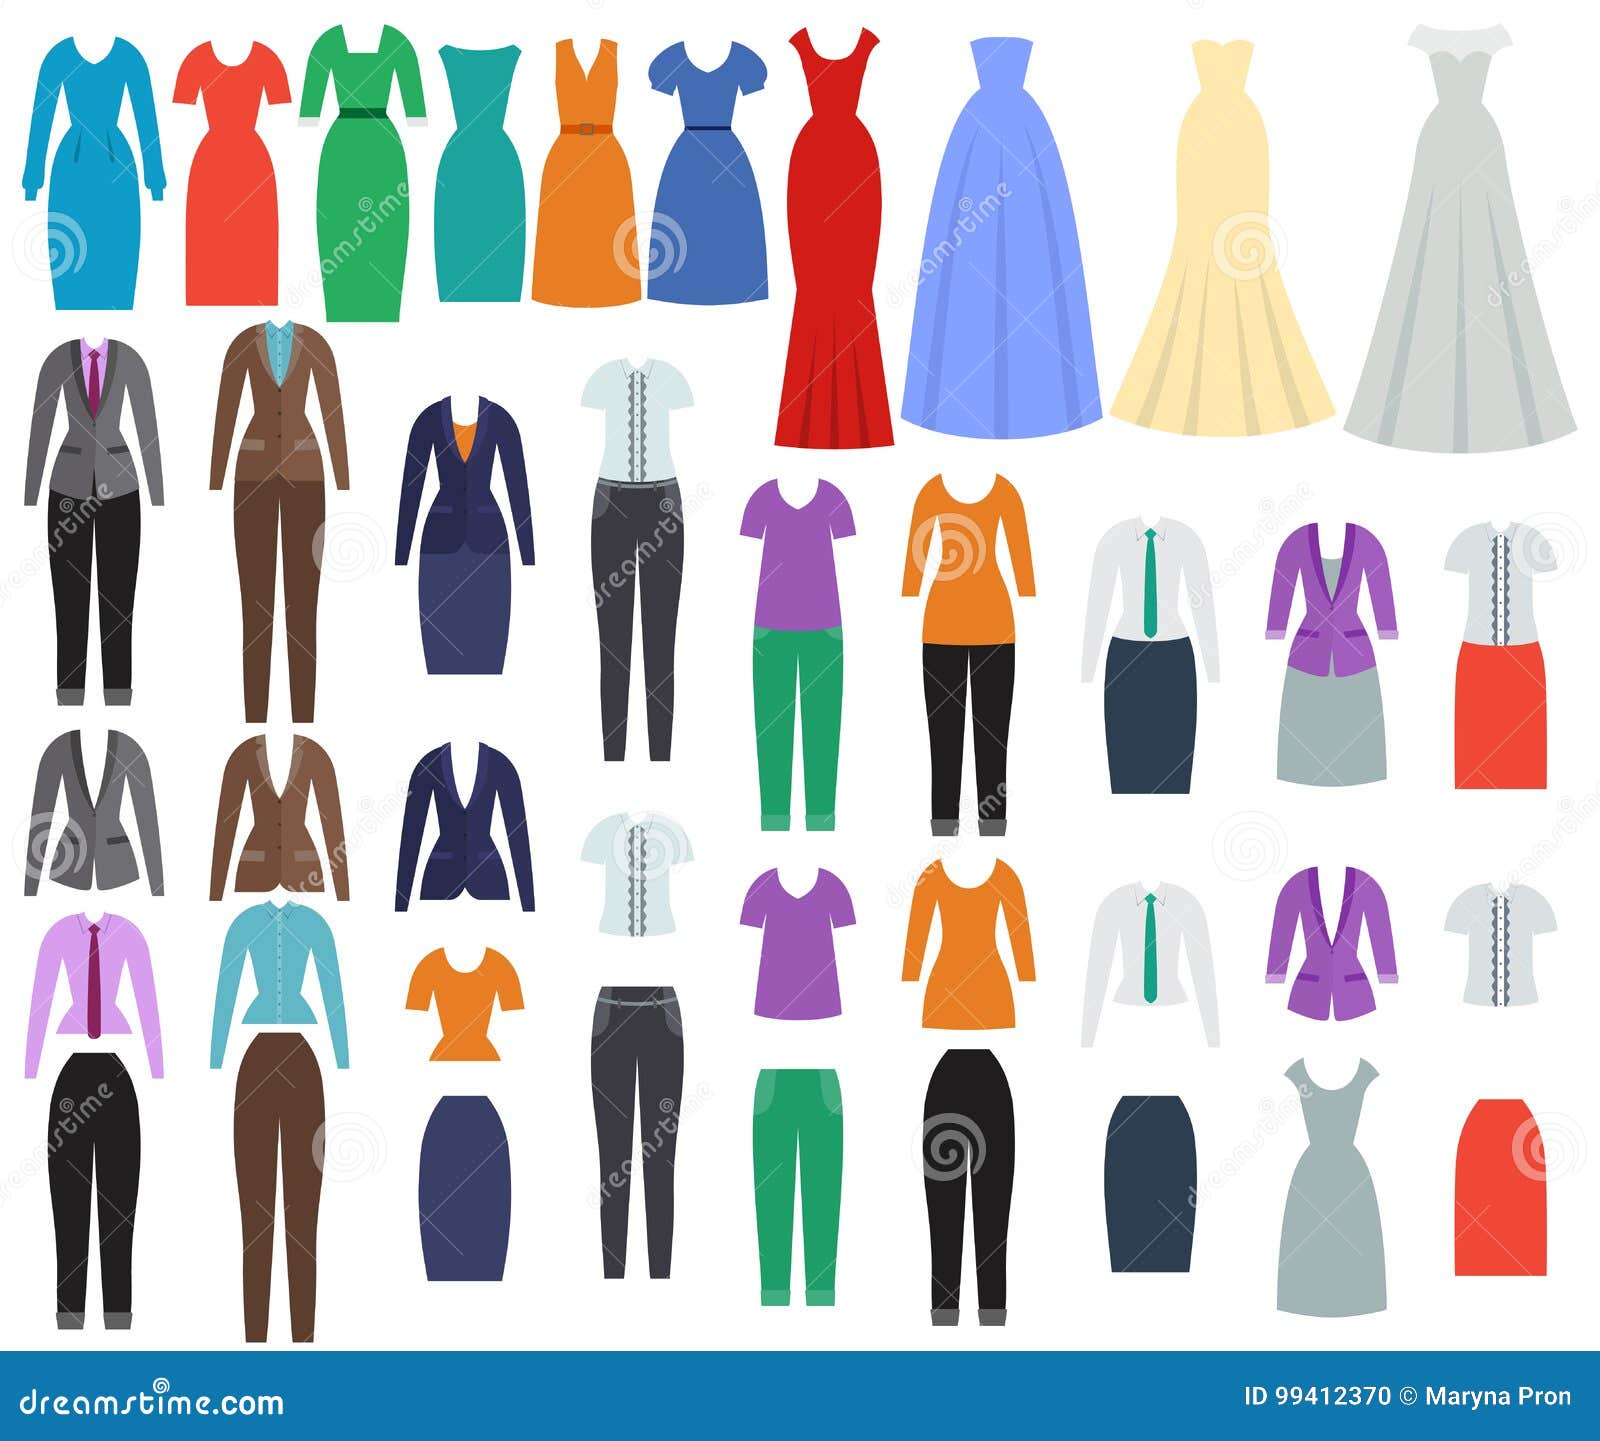 Ứng dụng Fashion Design Flat Sketch: Tự tay thiết kế quần áo, trang phục |  Link tải free, cách sử dụng